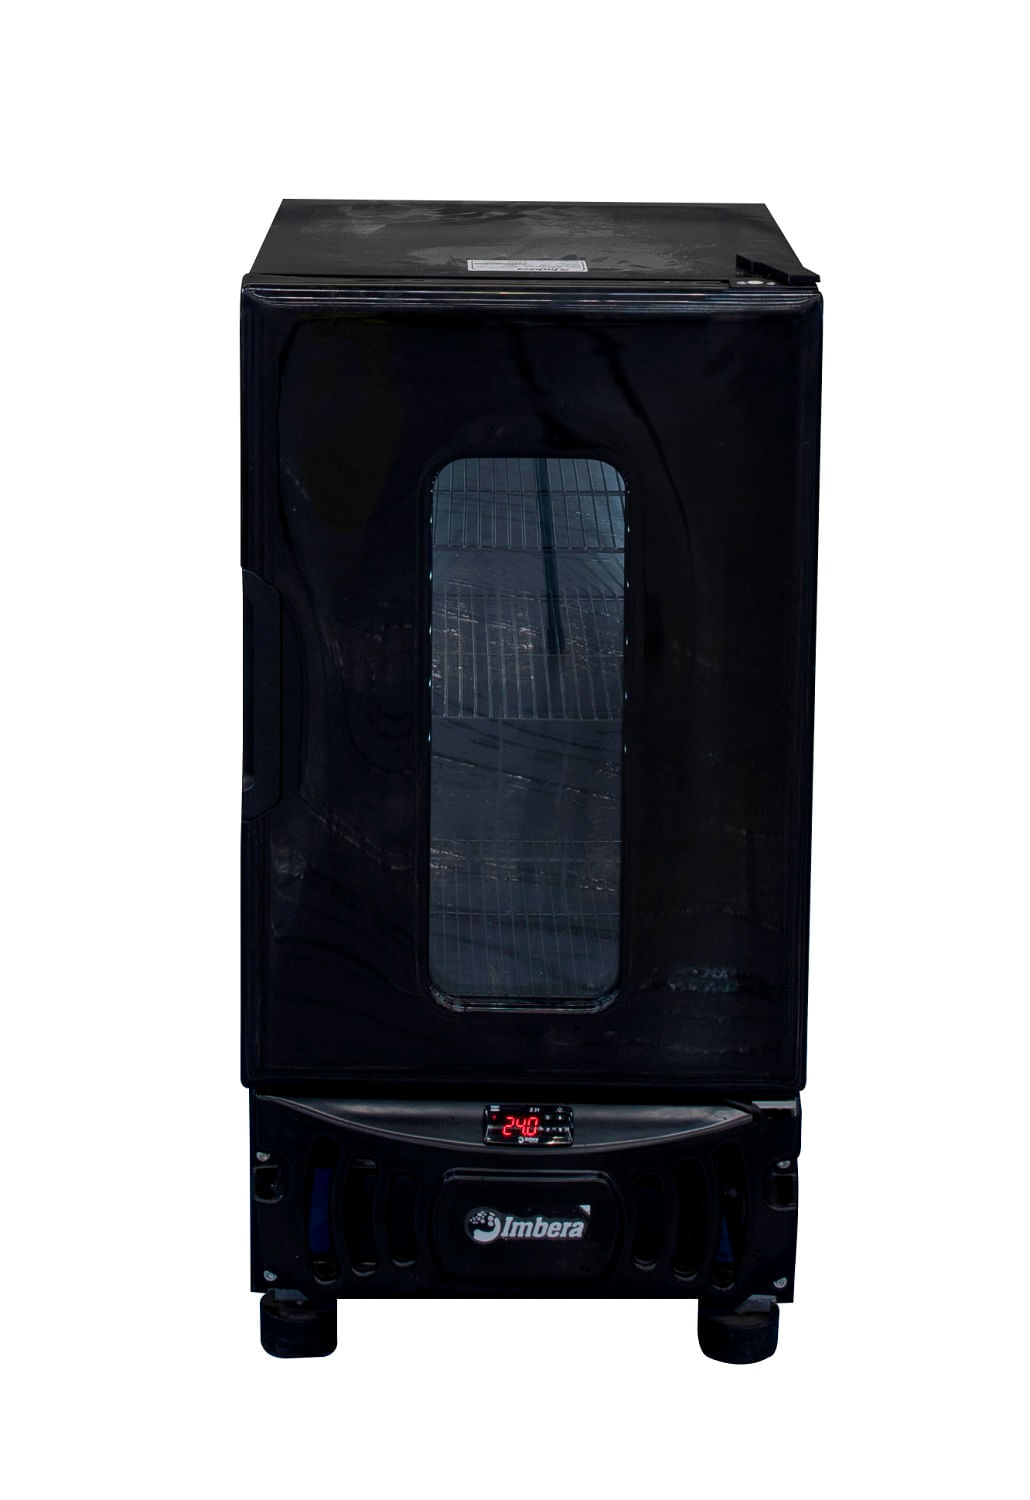 Geladeira/refrigerador 105 Litros 1 Portas Preto Carenada - Imbera Beyond Cooling - 110v - Ccv-72